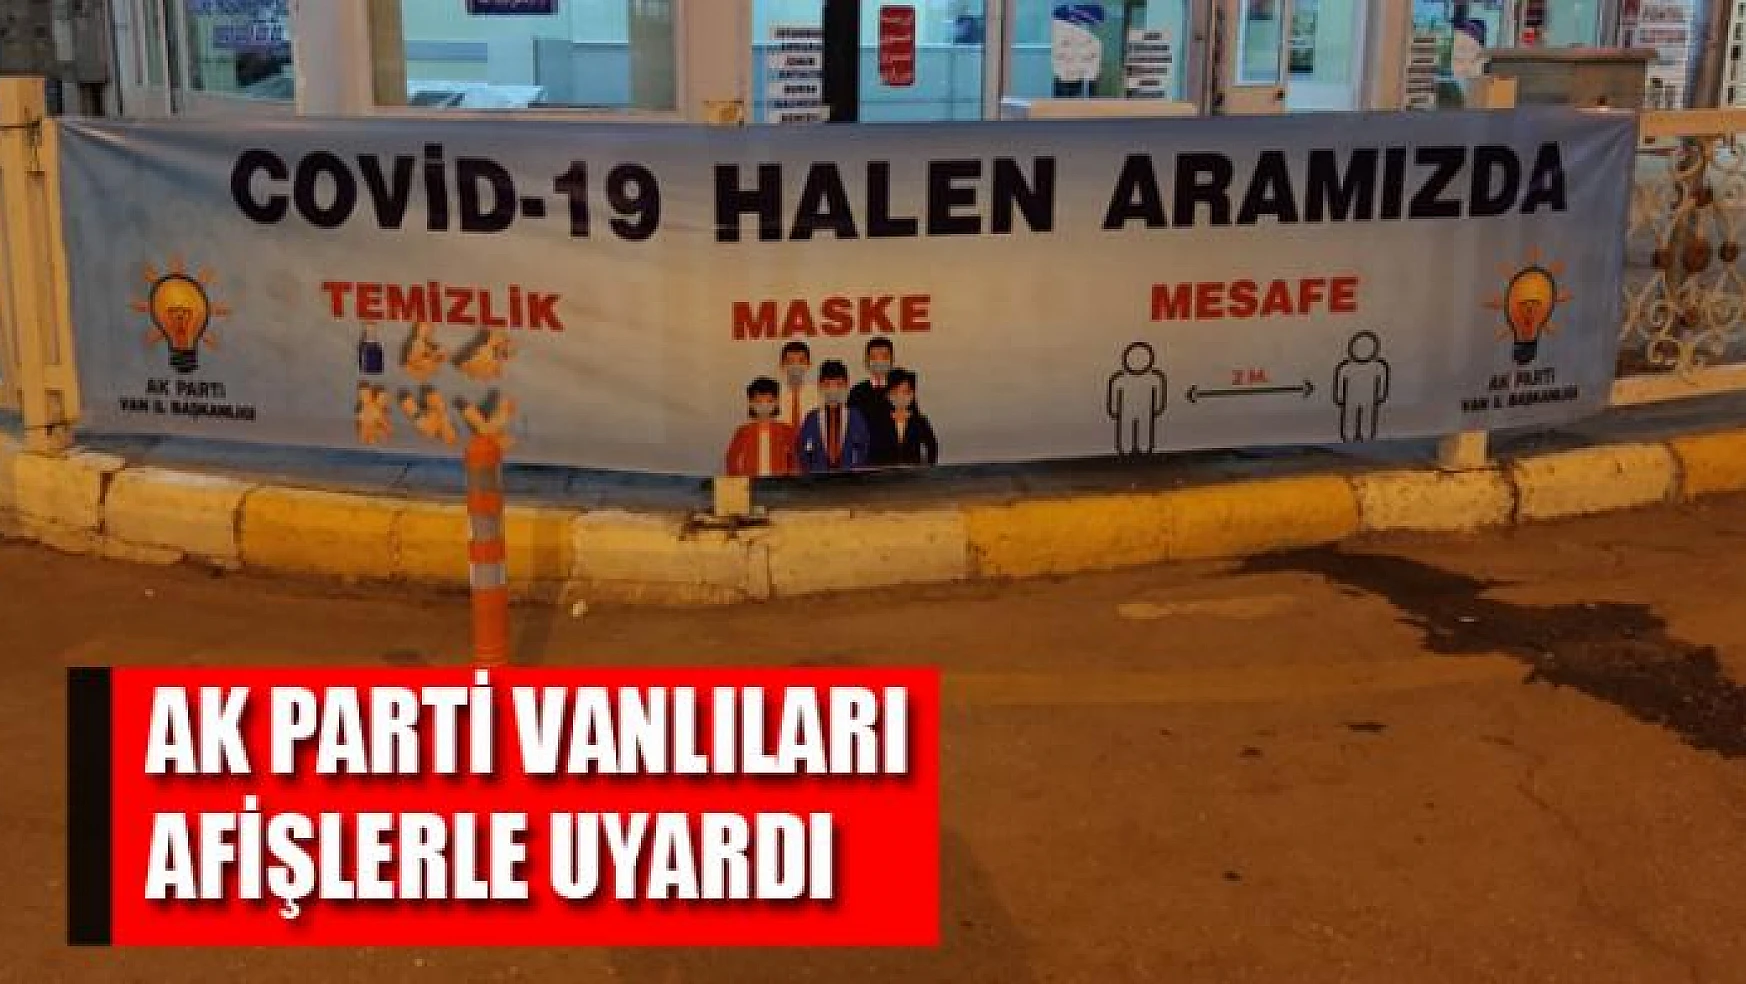 AK Parti Vanlıları afişlerle uyardı